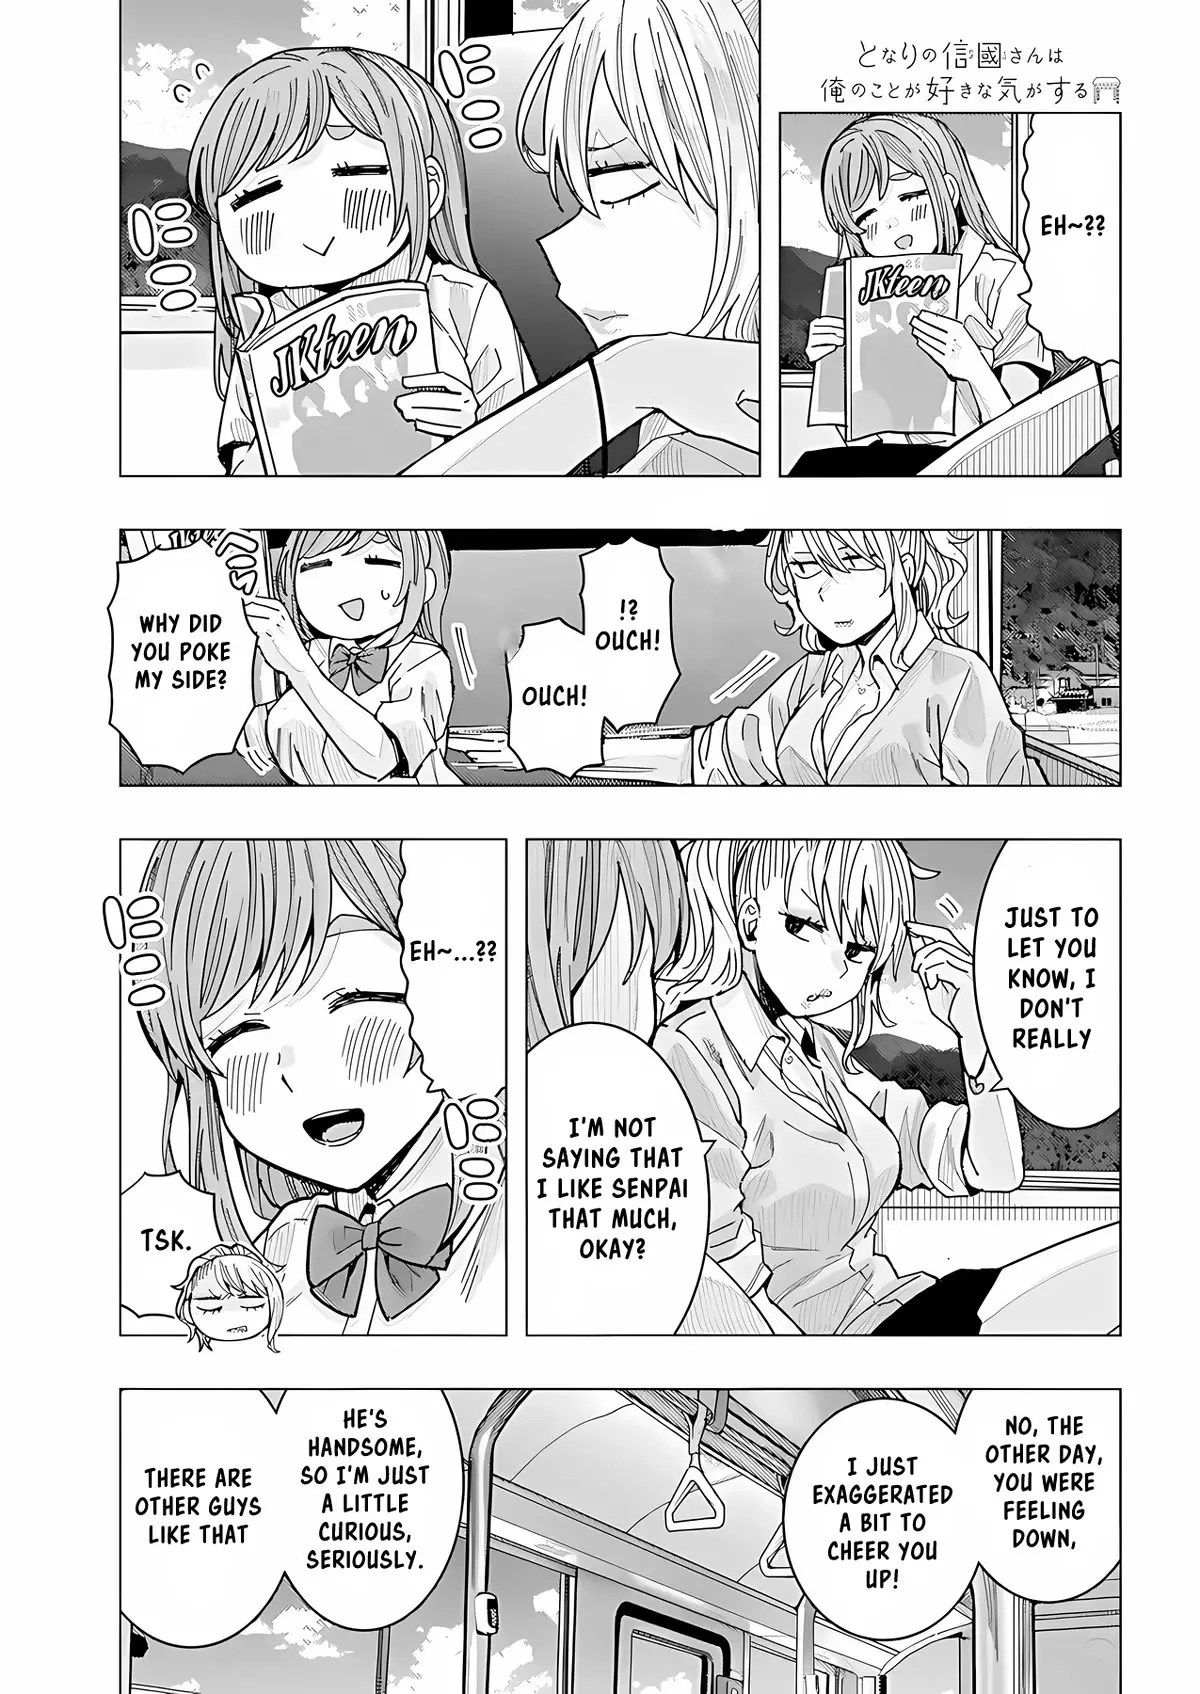 "nobukuni-San" Does She Like Me? - 25 page 4-21d5ffc7